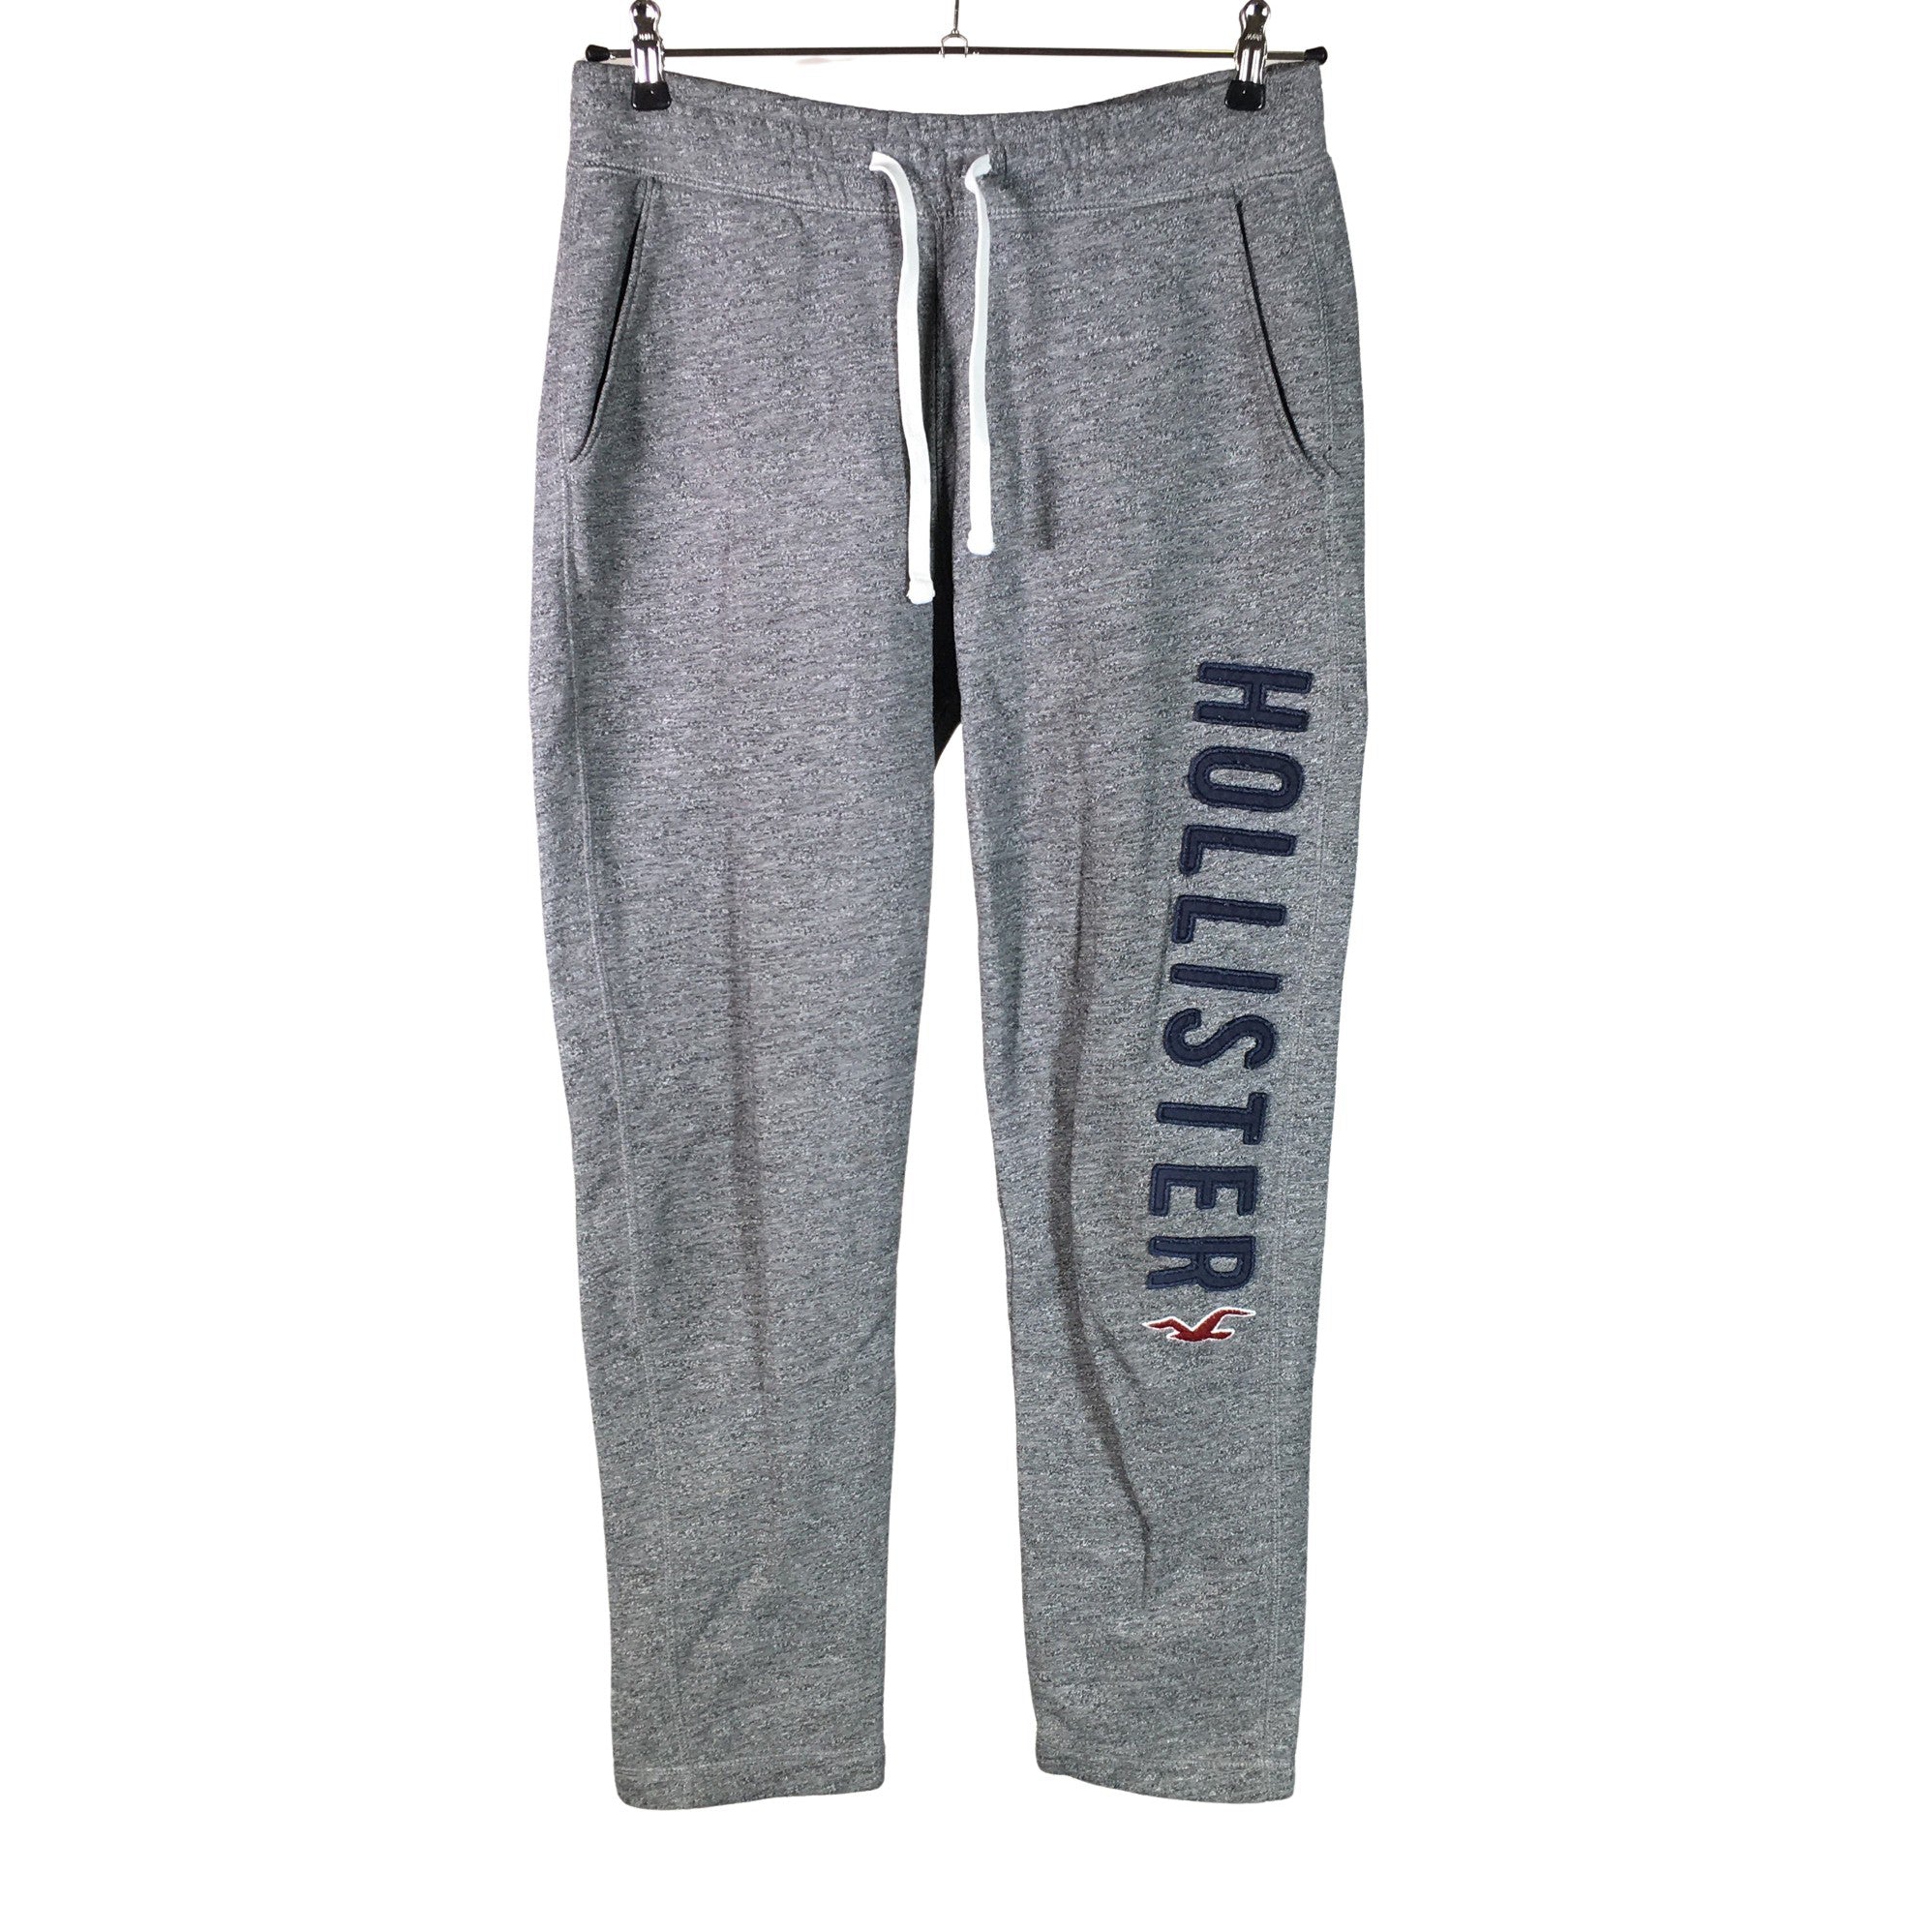 Men's Hollister Sweatpants, size M (Grey)